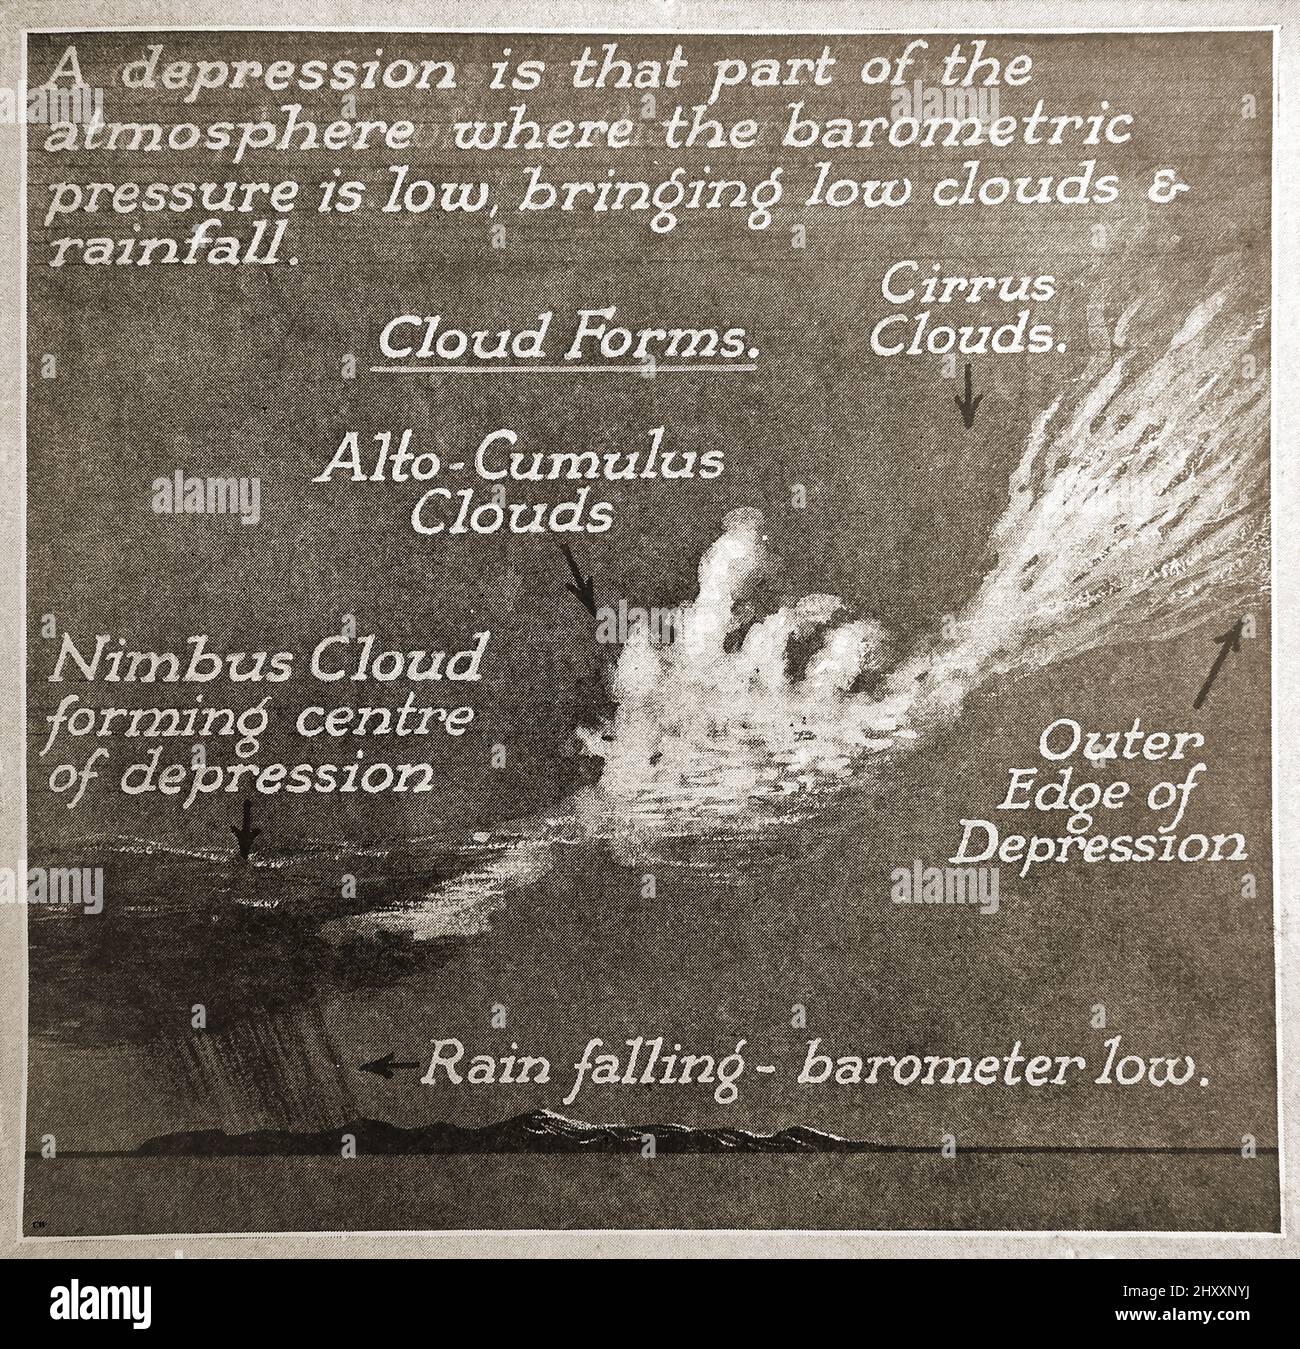 Une ancienne carte météorologique picturale de c1940 montrant comment se produit une dépression. Banque D'Images